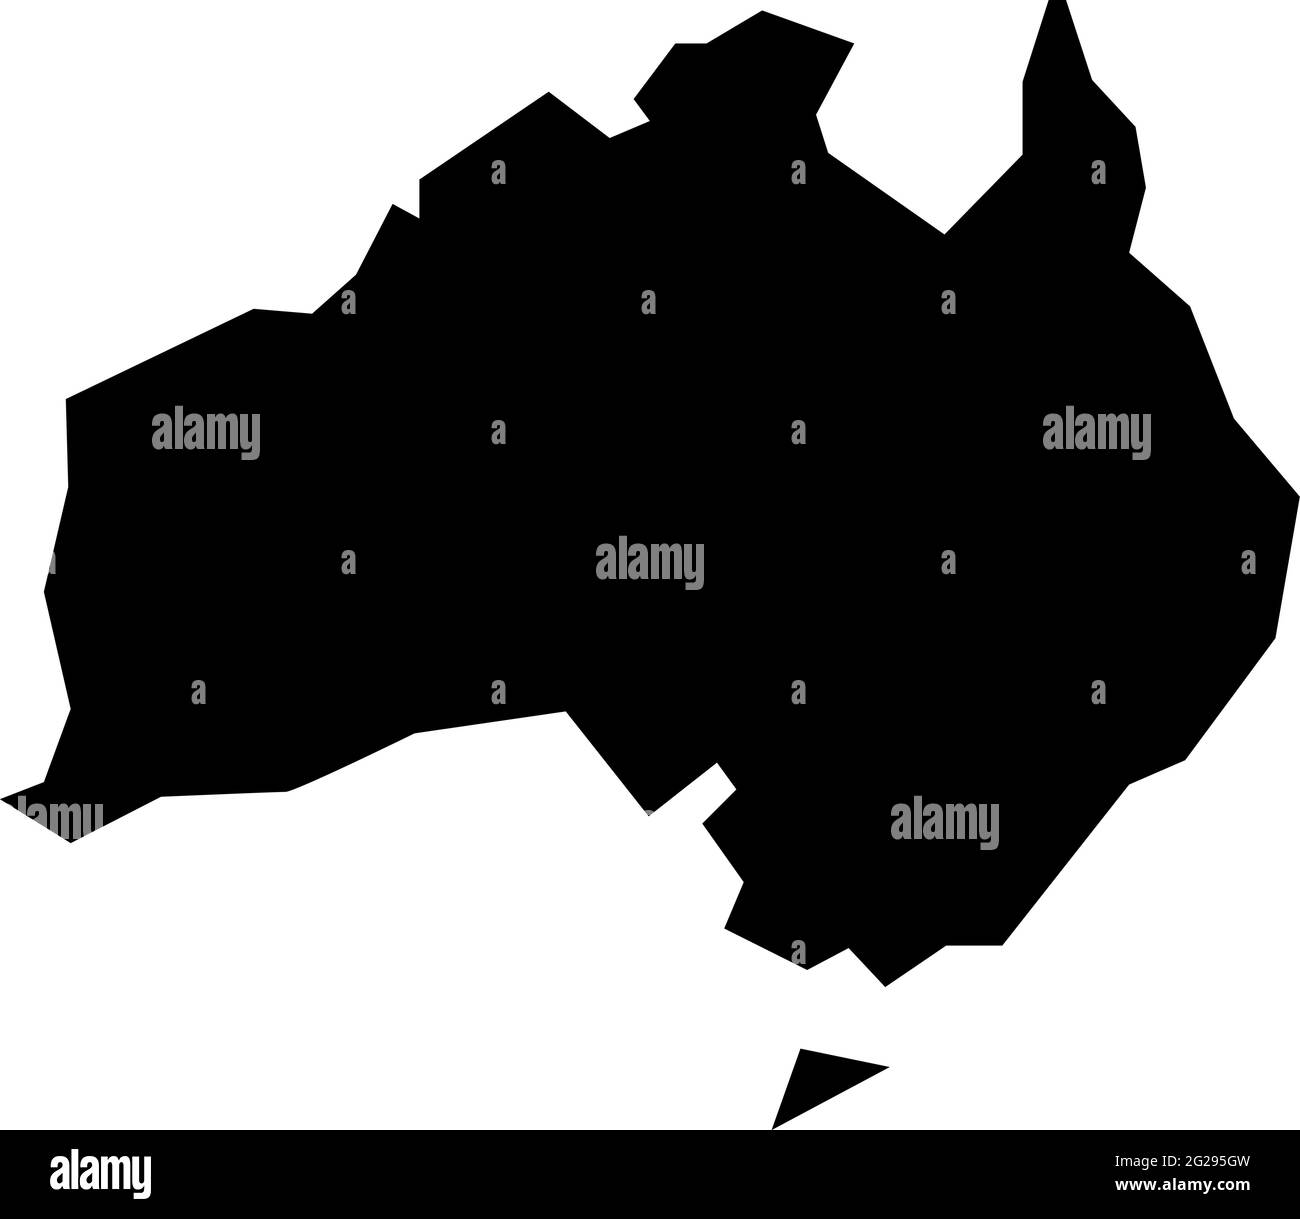 Raue Silhouette des australischen Kontinents isoliert auf weißer Vektorgrafik Stock Vektor